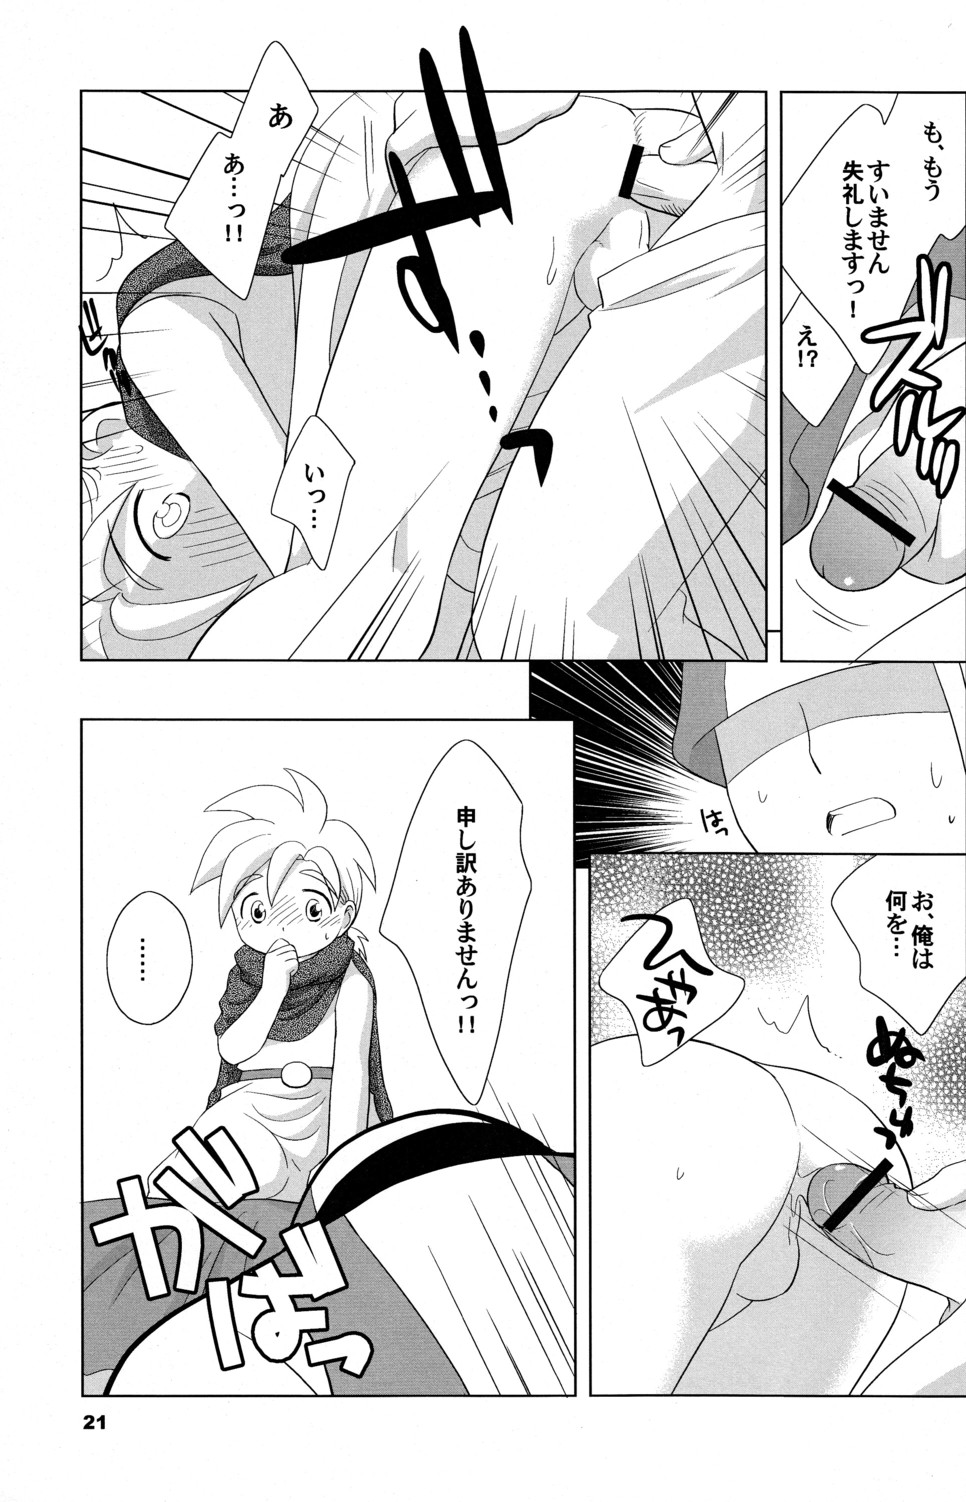 (Shotaket 10) [Tokuda (Ueda Yuu)] Hoshifuru Seisui (Dragon Quest V) page 21 full